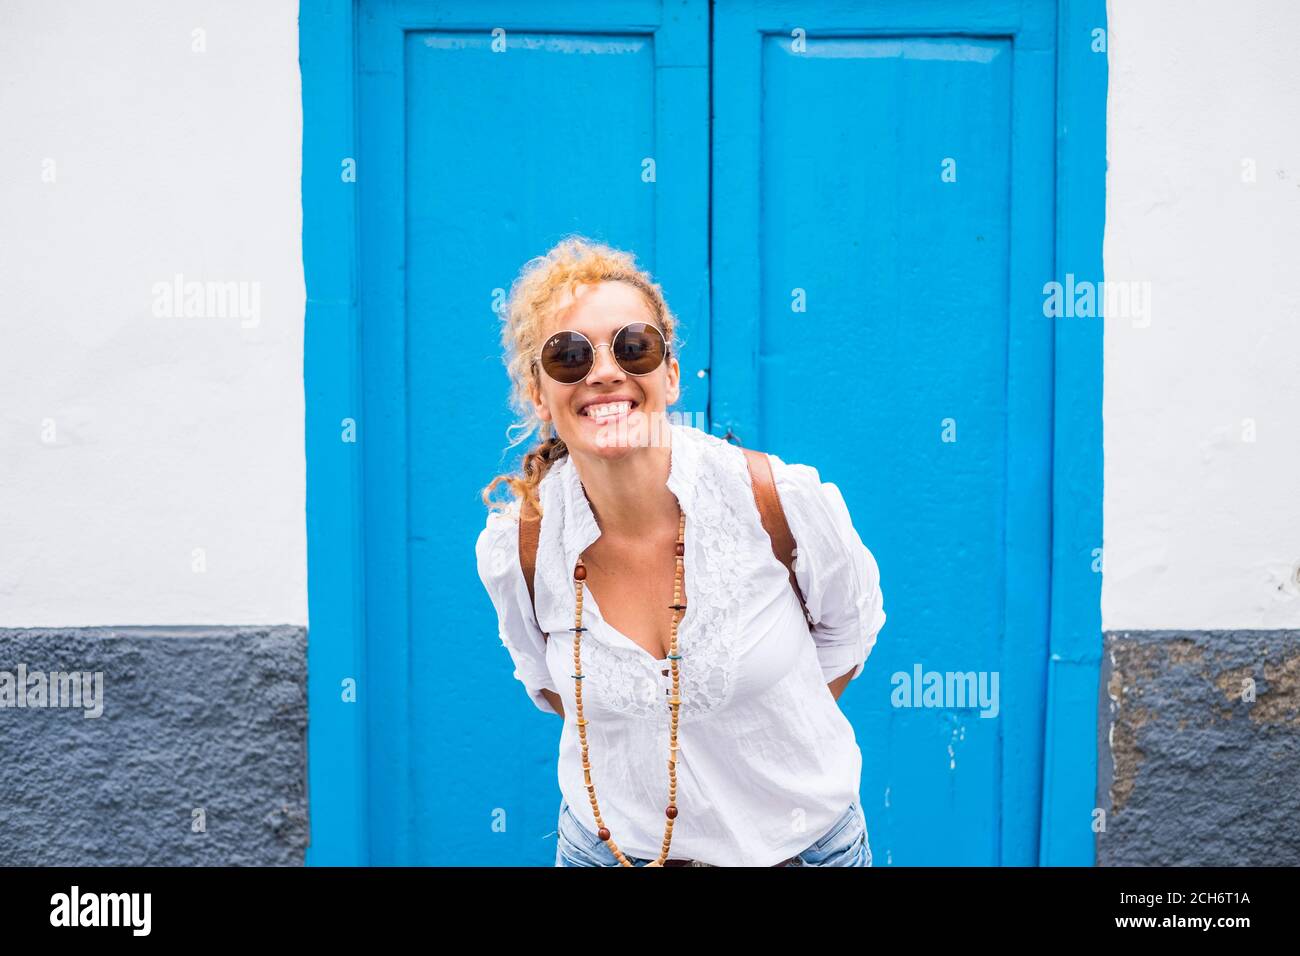 Fröhliche Menschen Porträt mit lächelnden Erwachsenen schöne Frau haben Spaß Draußen mit blau-weißen Tür und Wand Zuhause in Hintergrund - Konzept der Outdoor Stockfoto